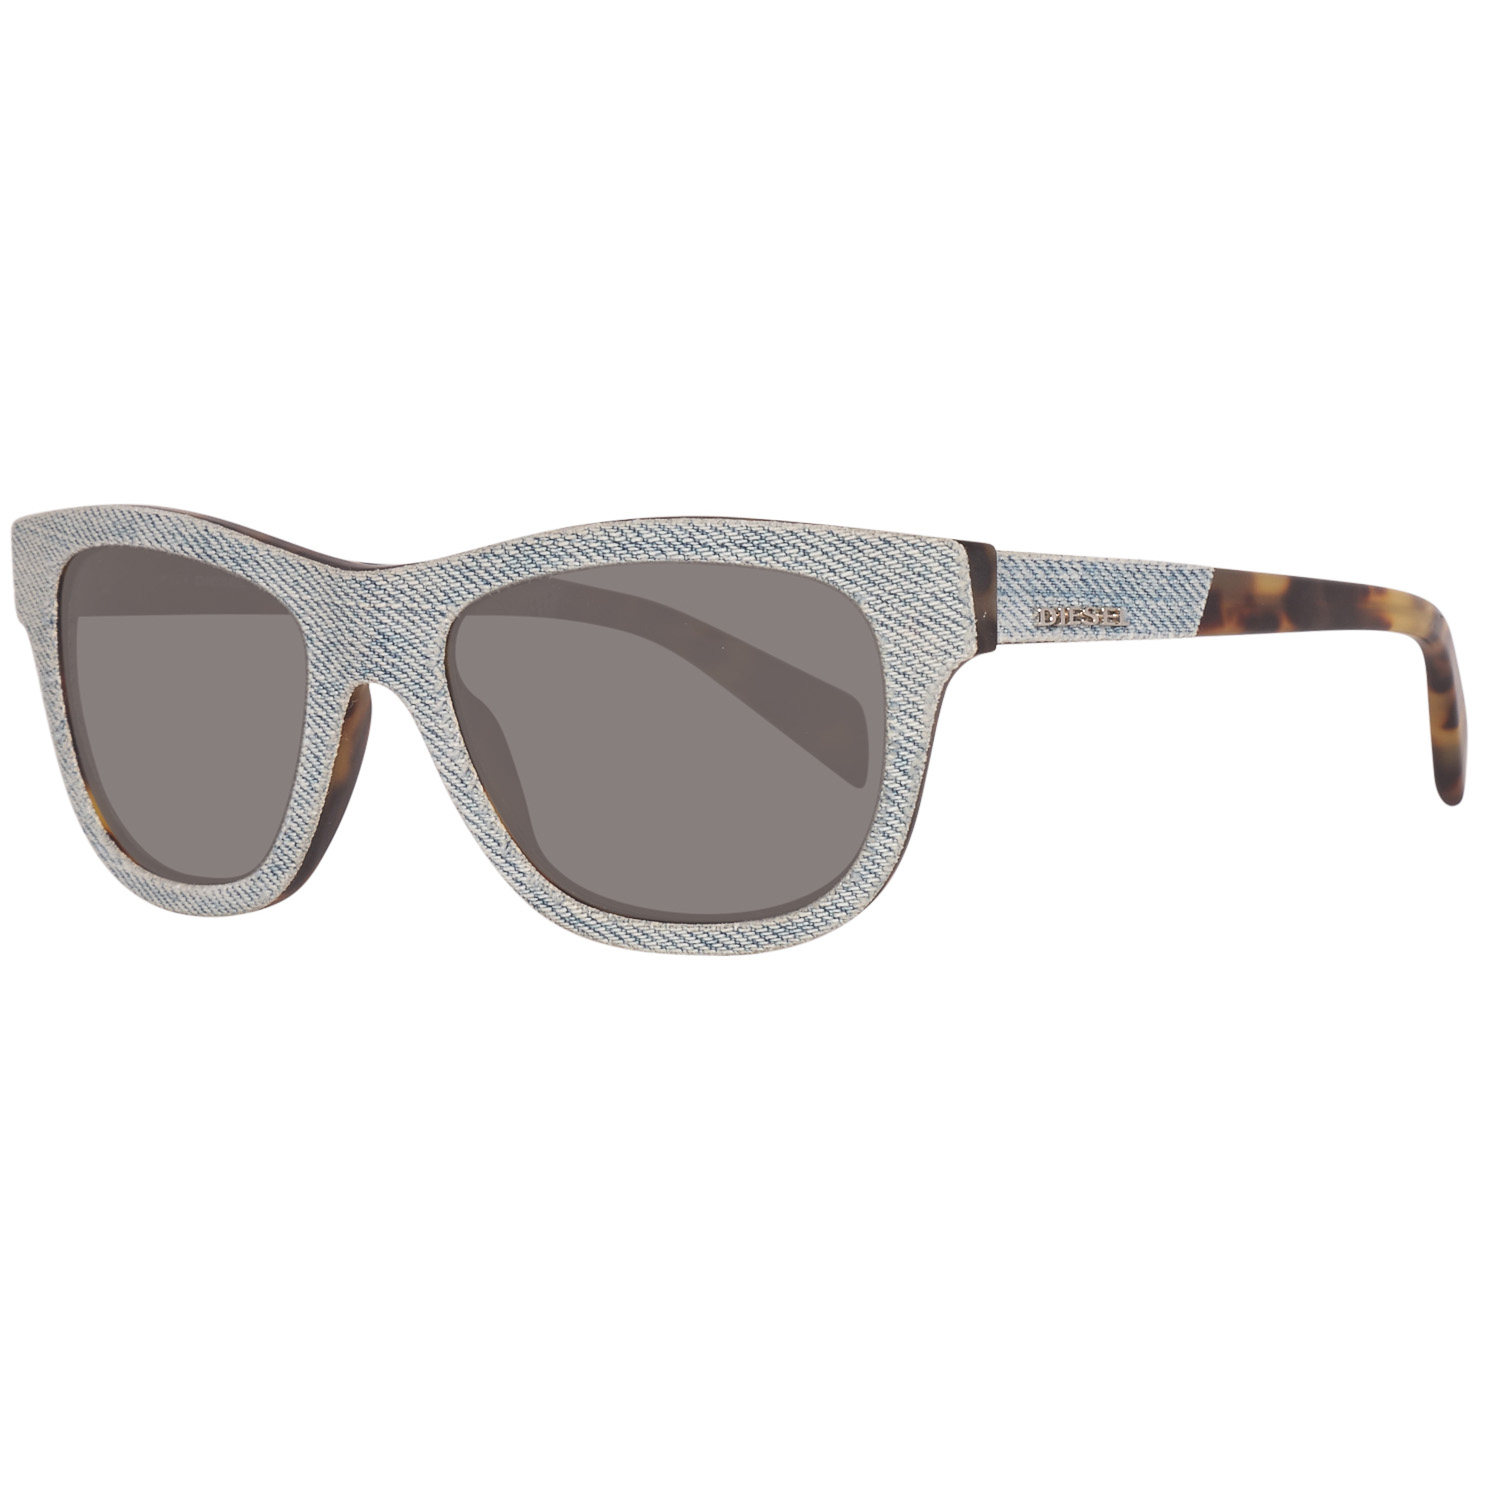 Diesel Sunglasses DL0111 84B 52